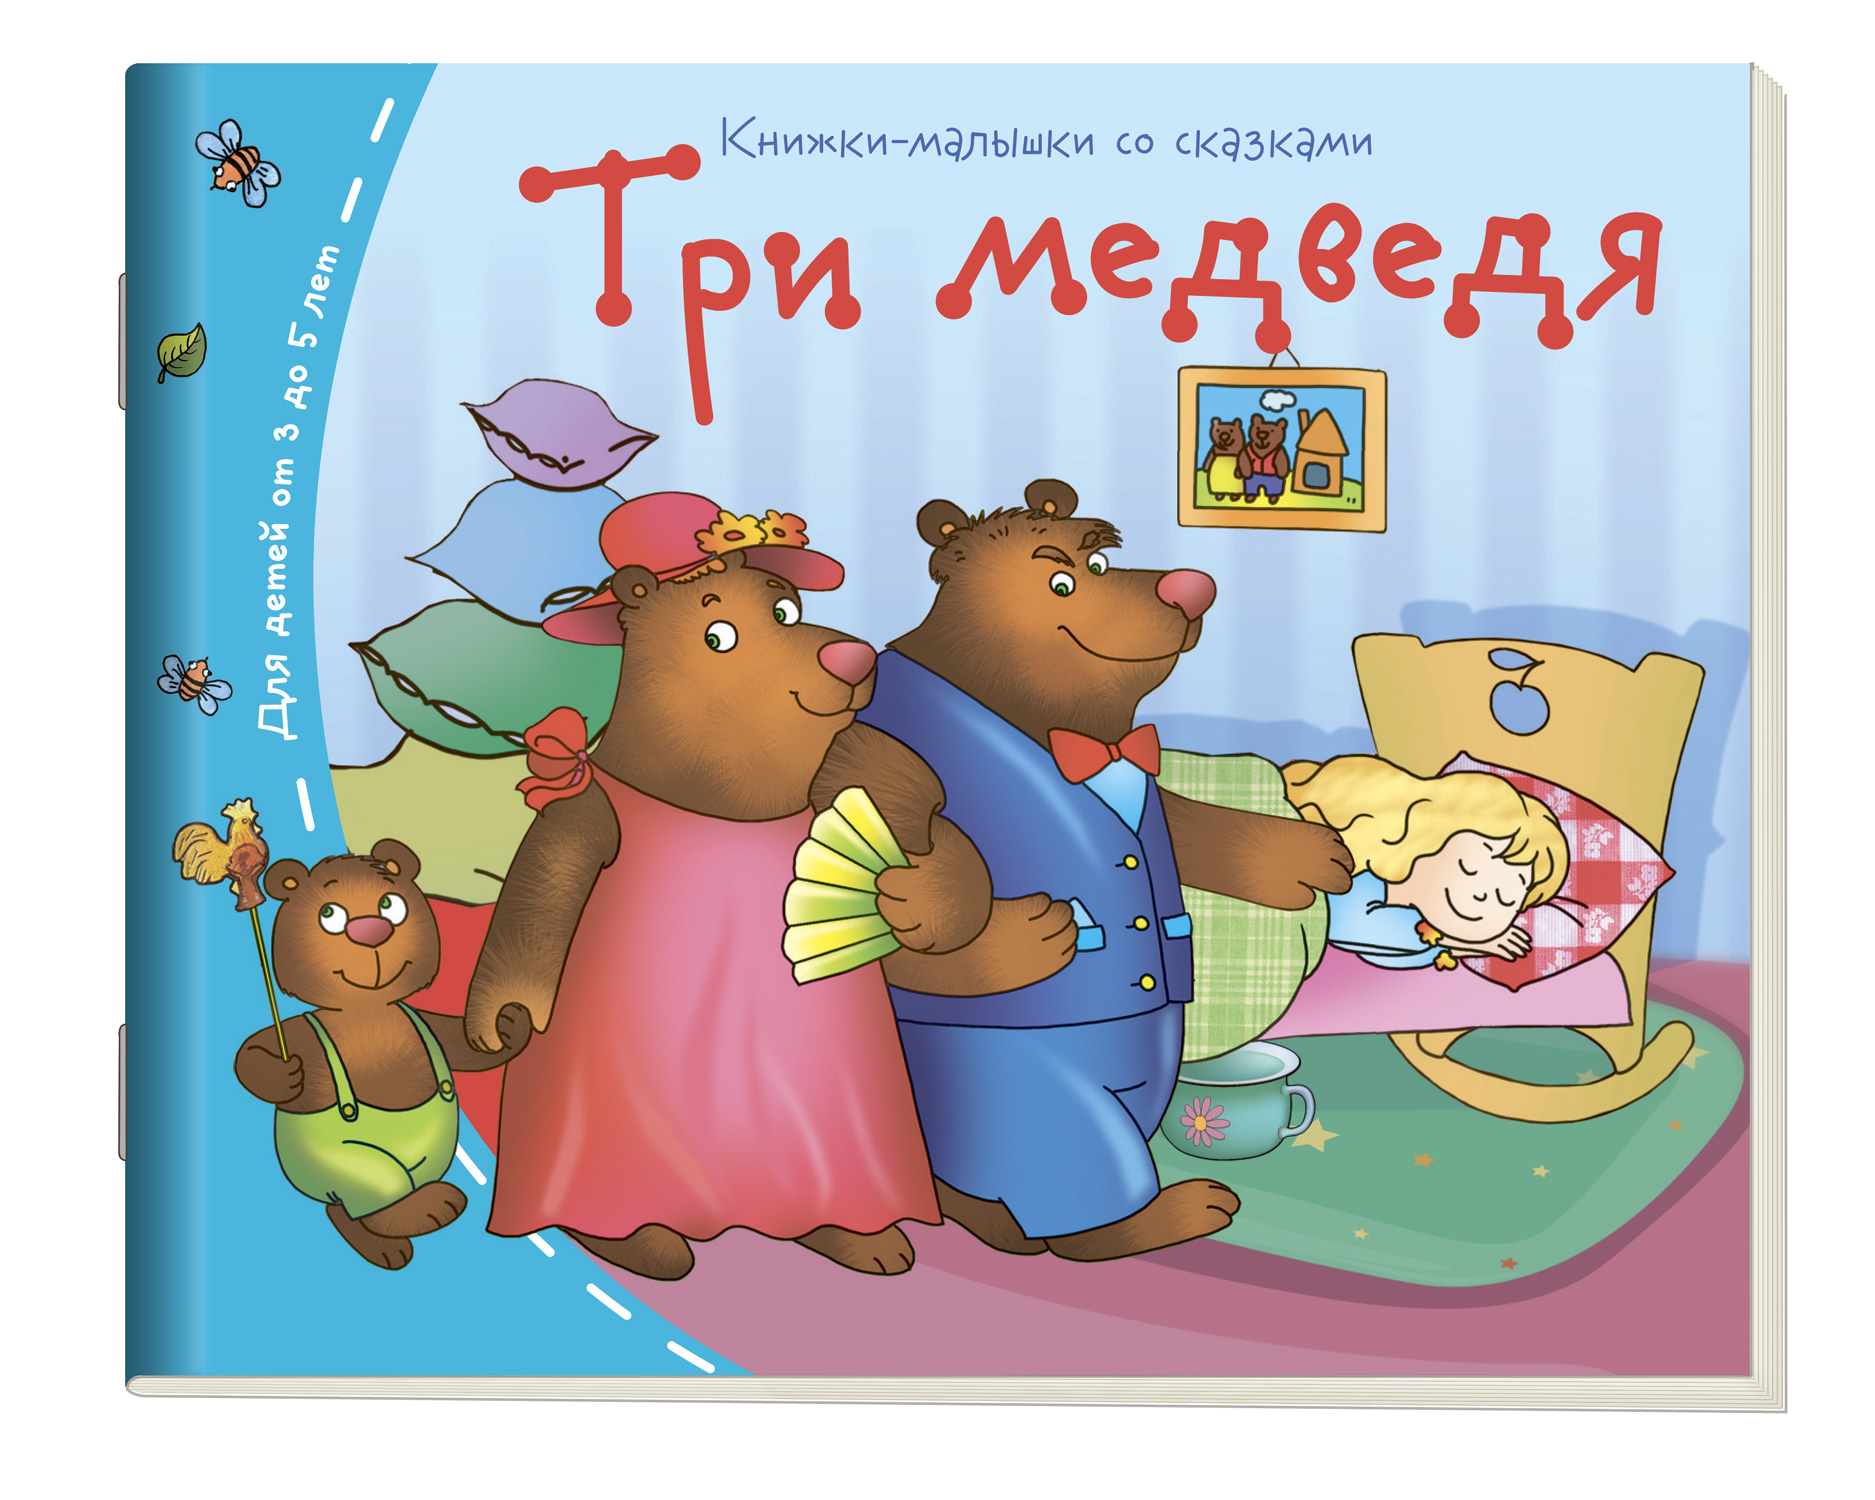 Три медведя: Книжки-малышки со сказками